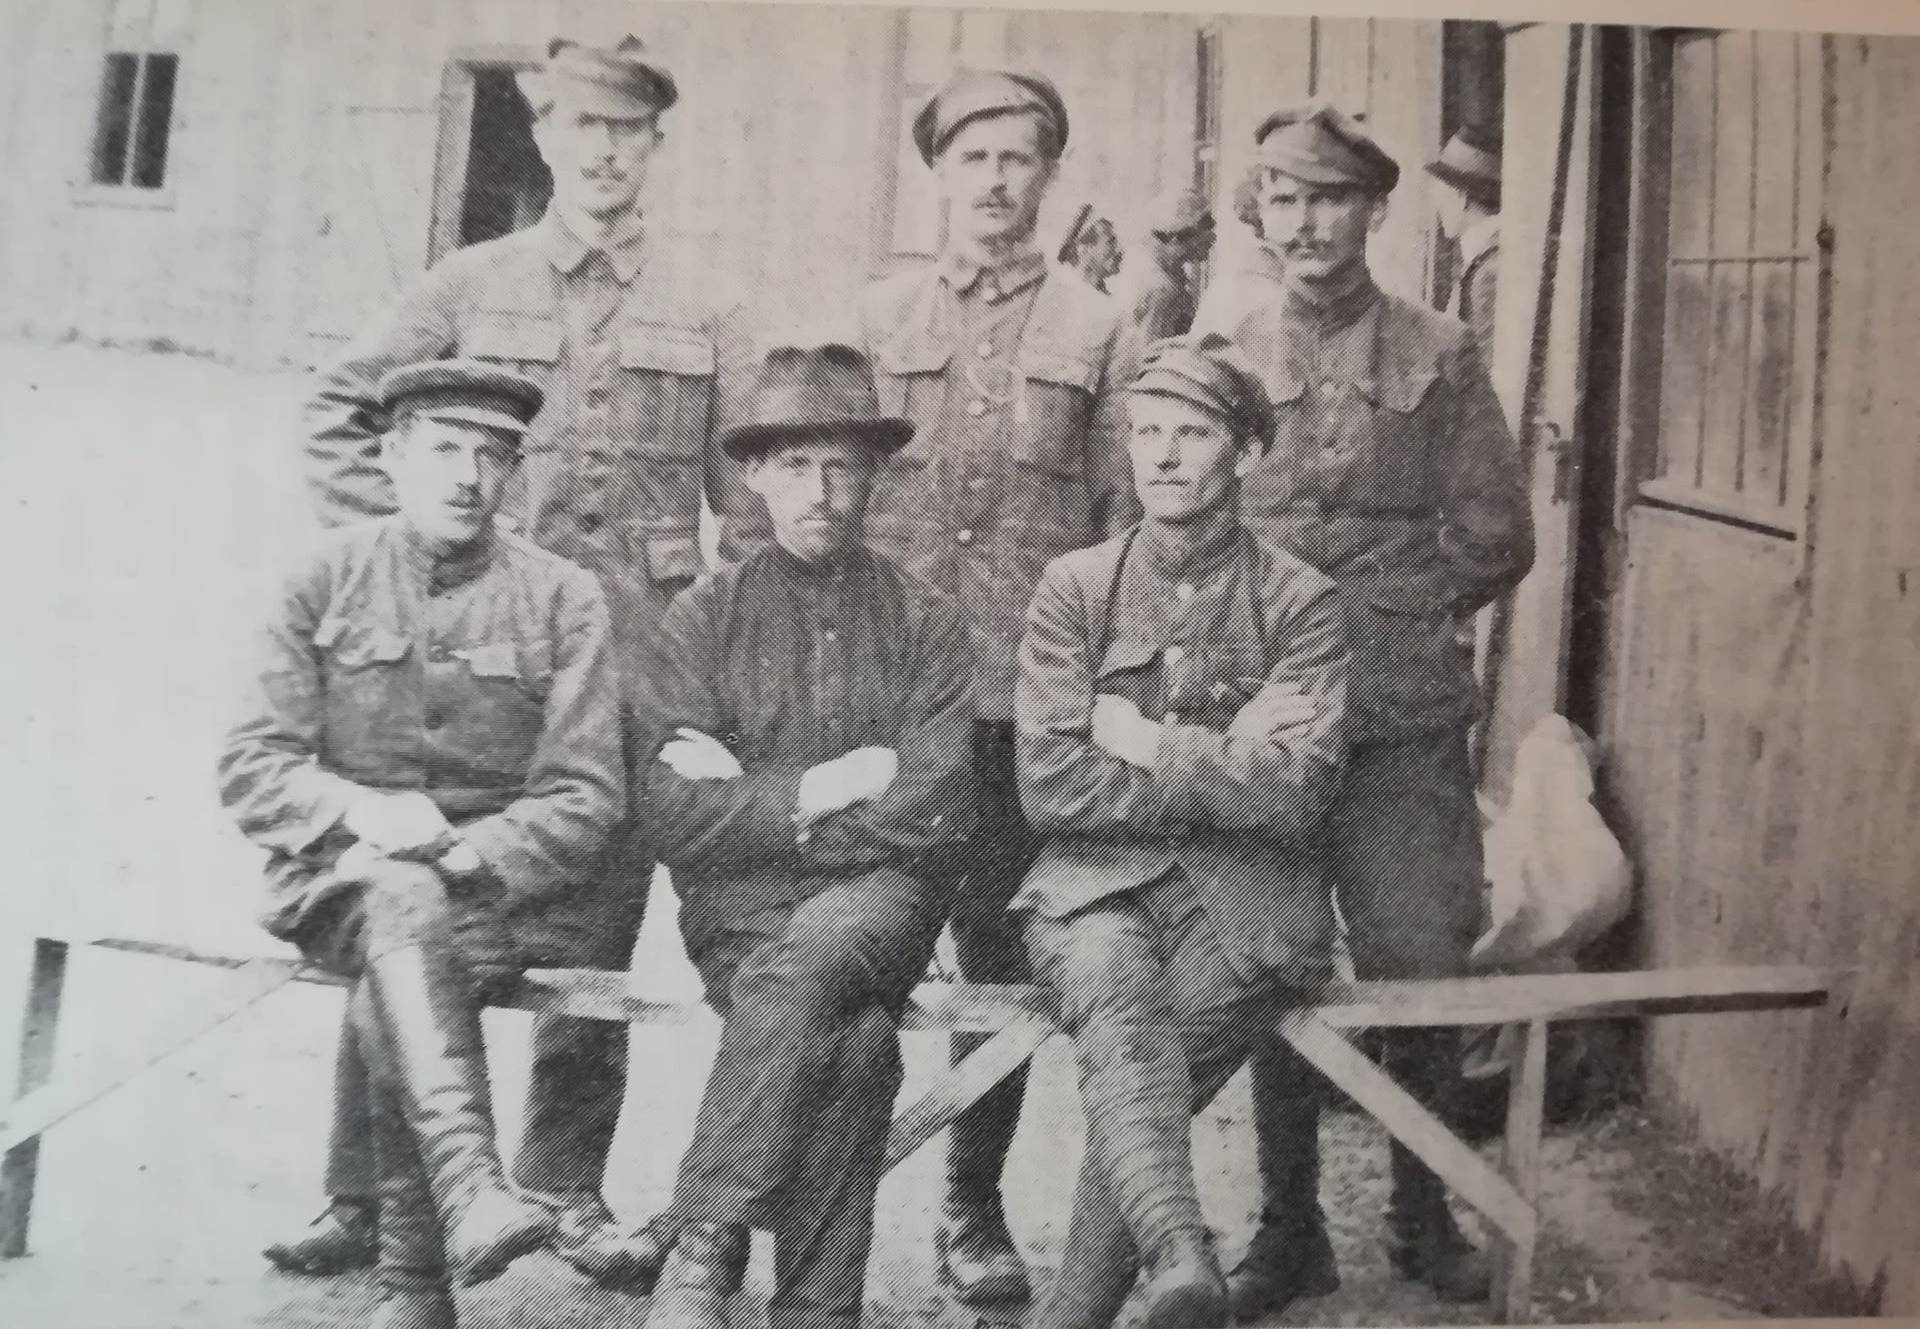 Slovenci-rdečearmejci z leve proti desni (na klopi): Franc Fon, kovač iz Bovca, Ivan Kogovšek in Tratnik; prvi na levi stoji Ivan Možina, rudar iz Loga pod Mangartom